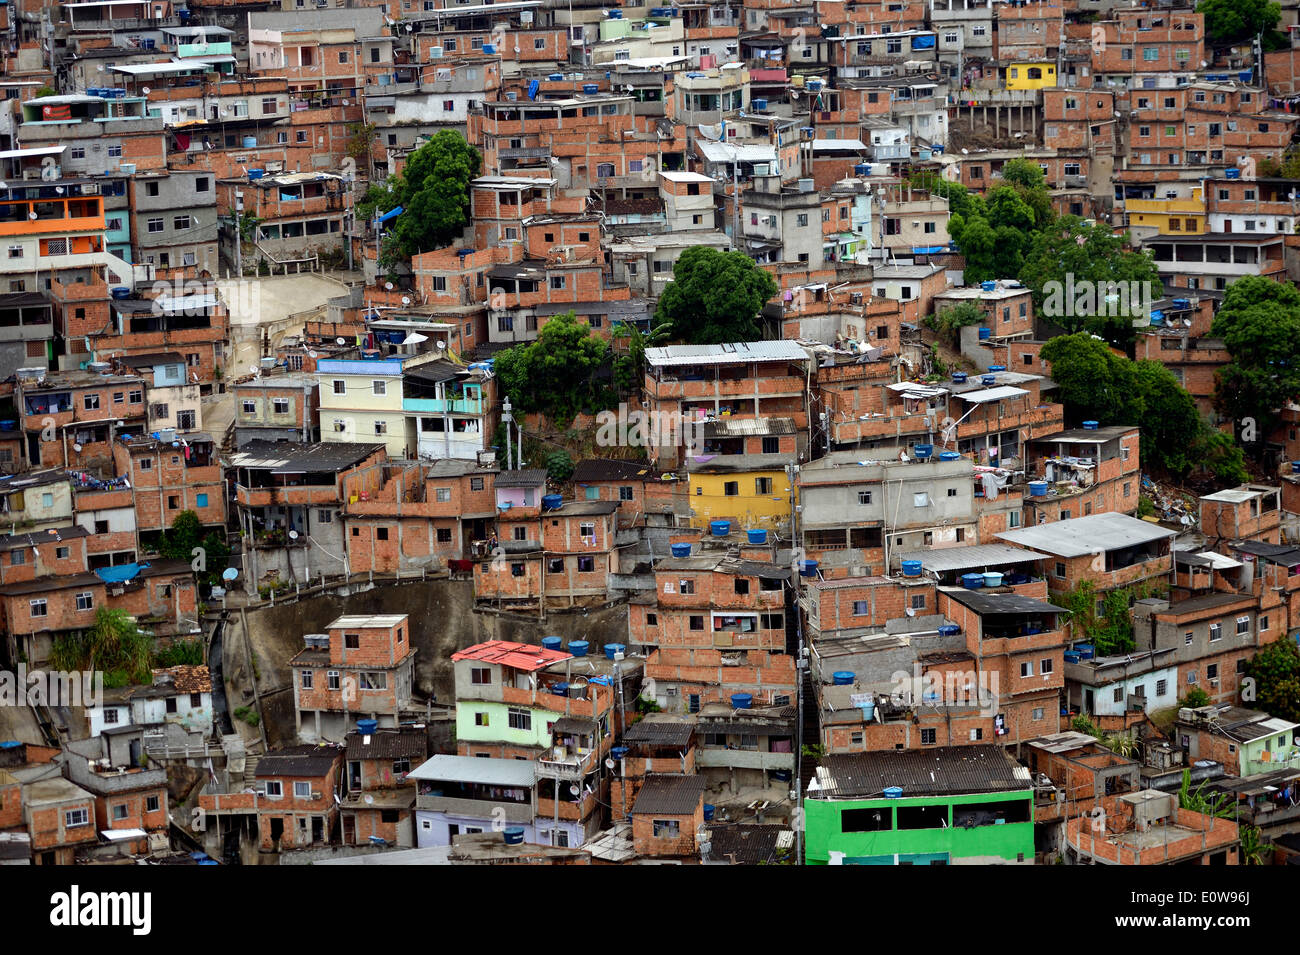 Complexo do Alemao favela, Rio de Janeiro, Brazil Stock Photo